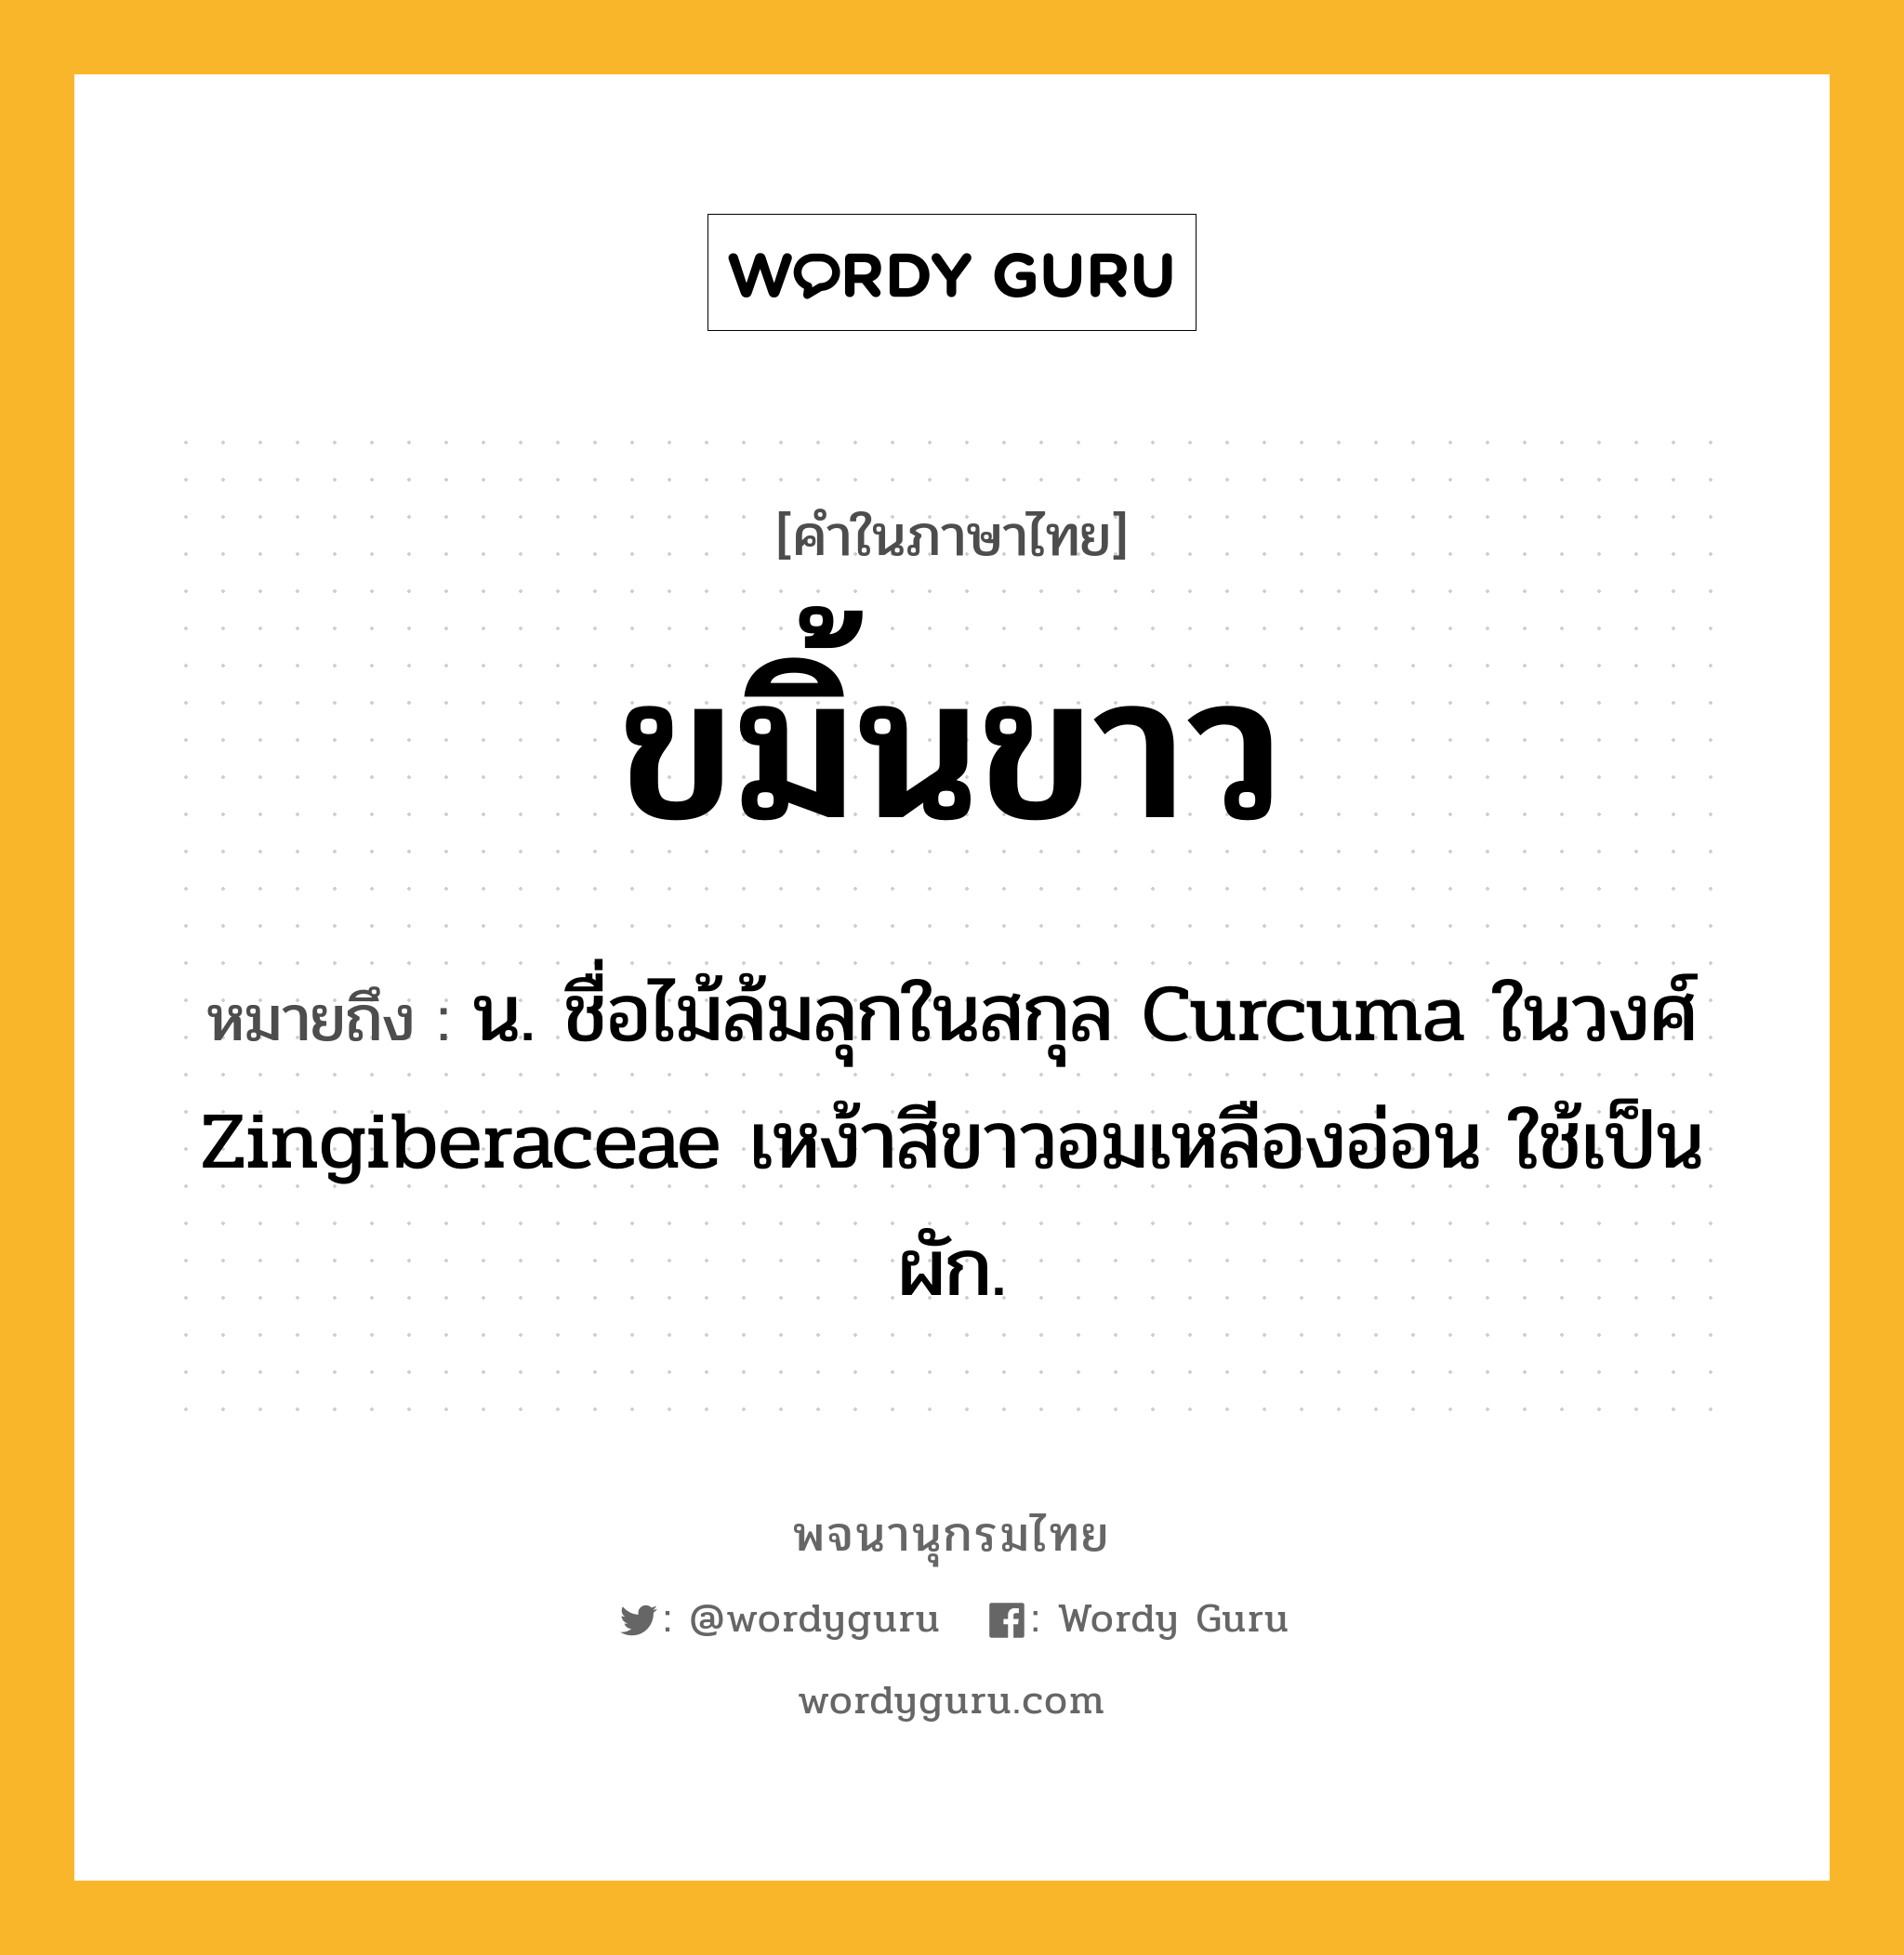 ขมิ้นขาว หมายถึงอะไร?, คำในภาษาไทย ขมิ้นขาว หมายถึง น. ชื่อไม้ล้มลุกในสกุล Curcuma ในวงศ์ Zingiberaceae เหง้าสีขาวอมเหลืองอ่อน ใช้เป็นผัก.